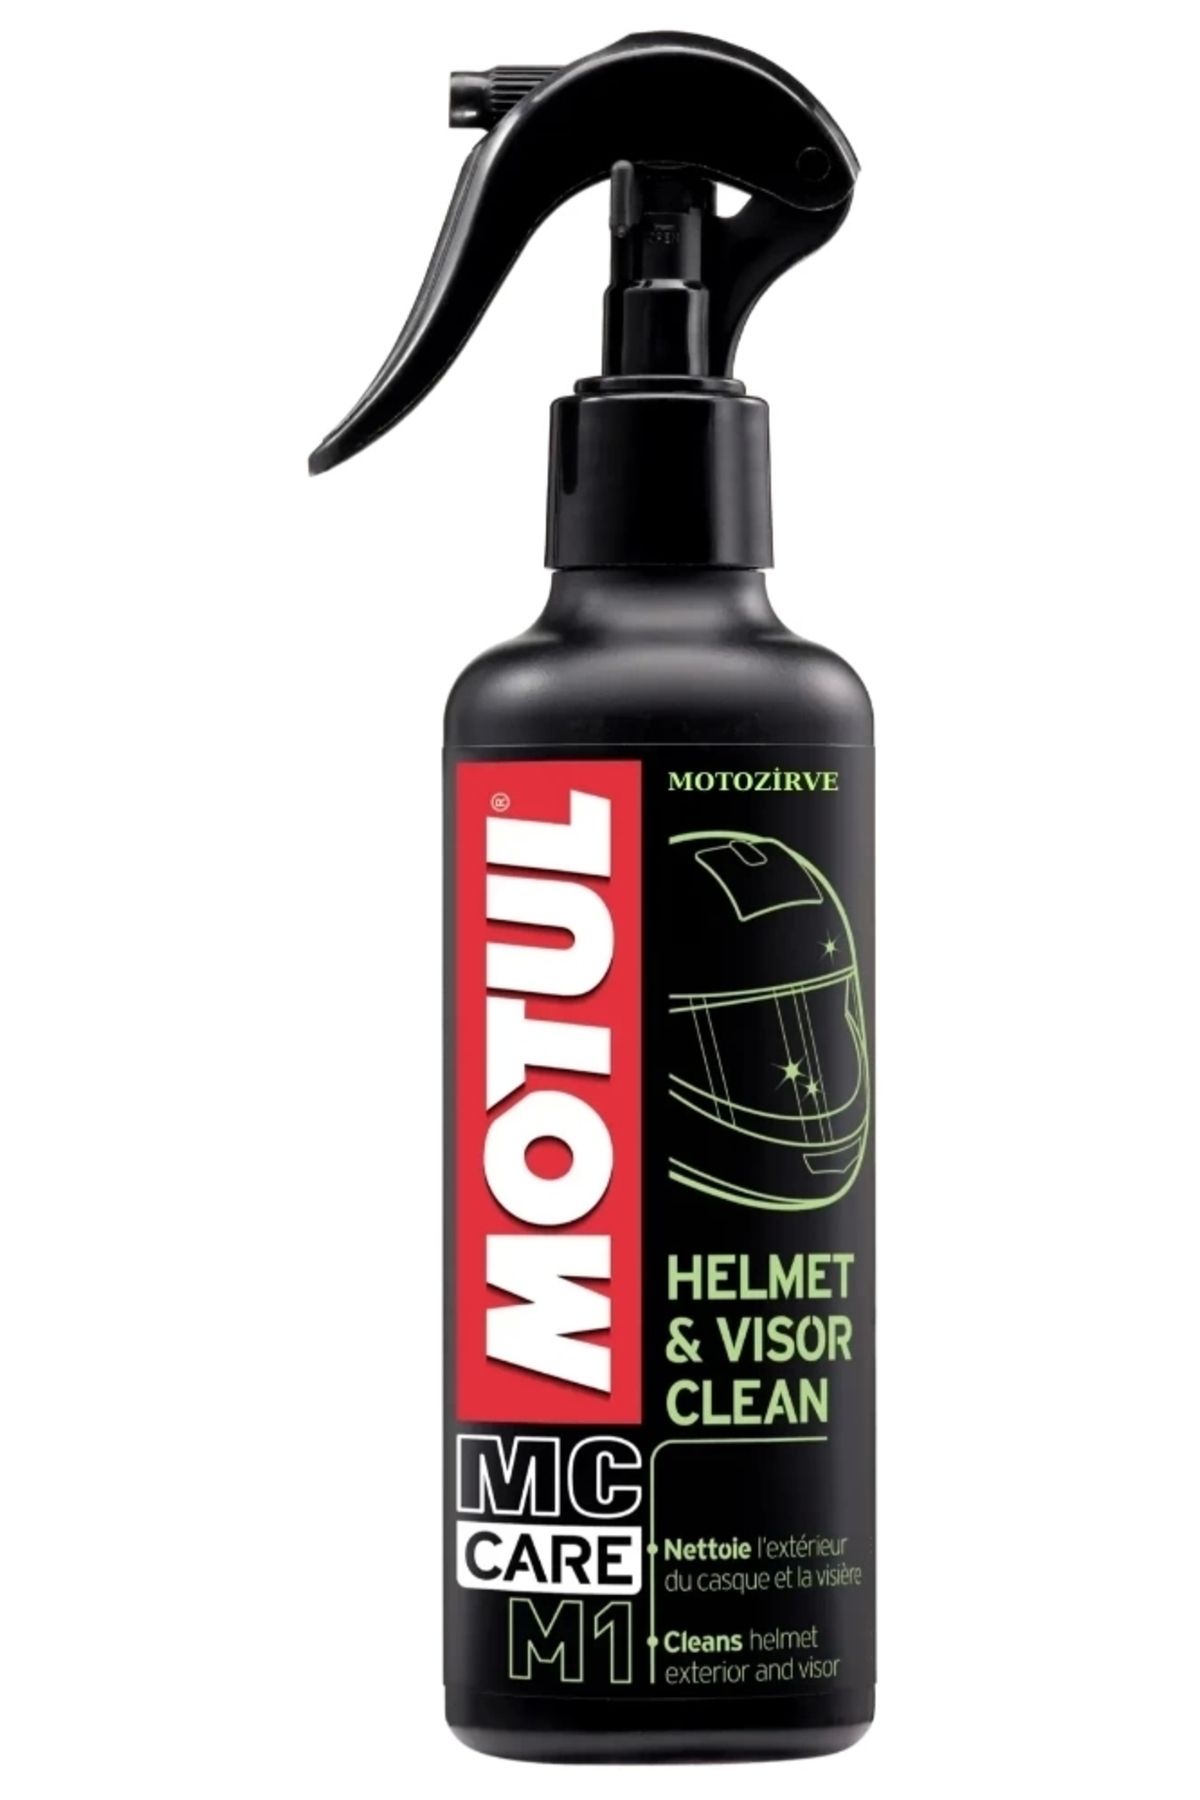 Motul M1 Helmet & Visor Clean Kask Vizör Temizleme Spreyi 250 ml